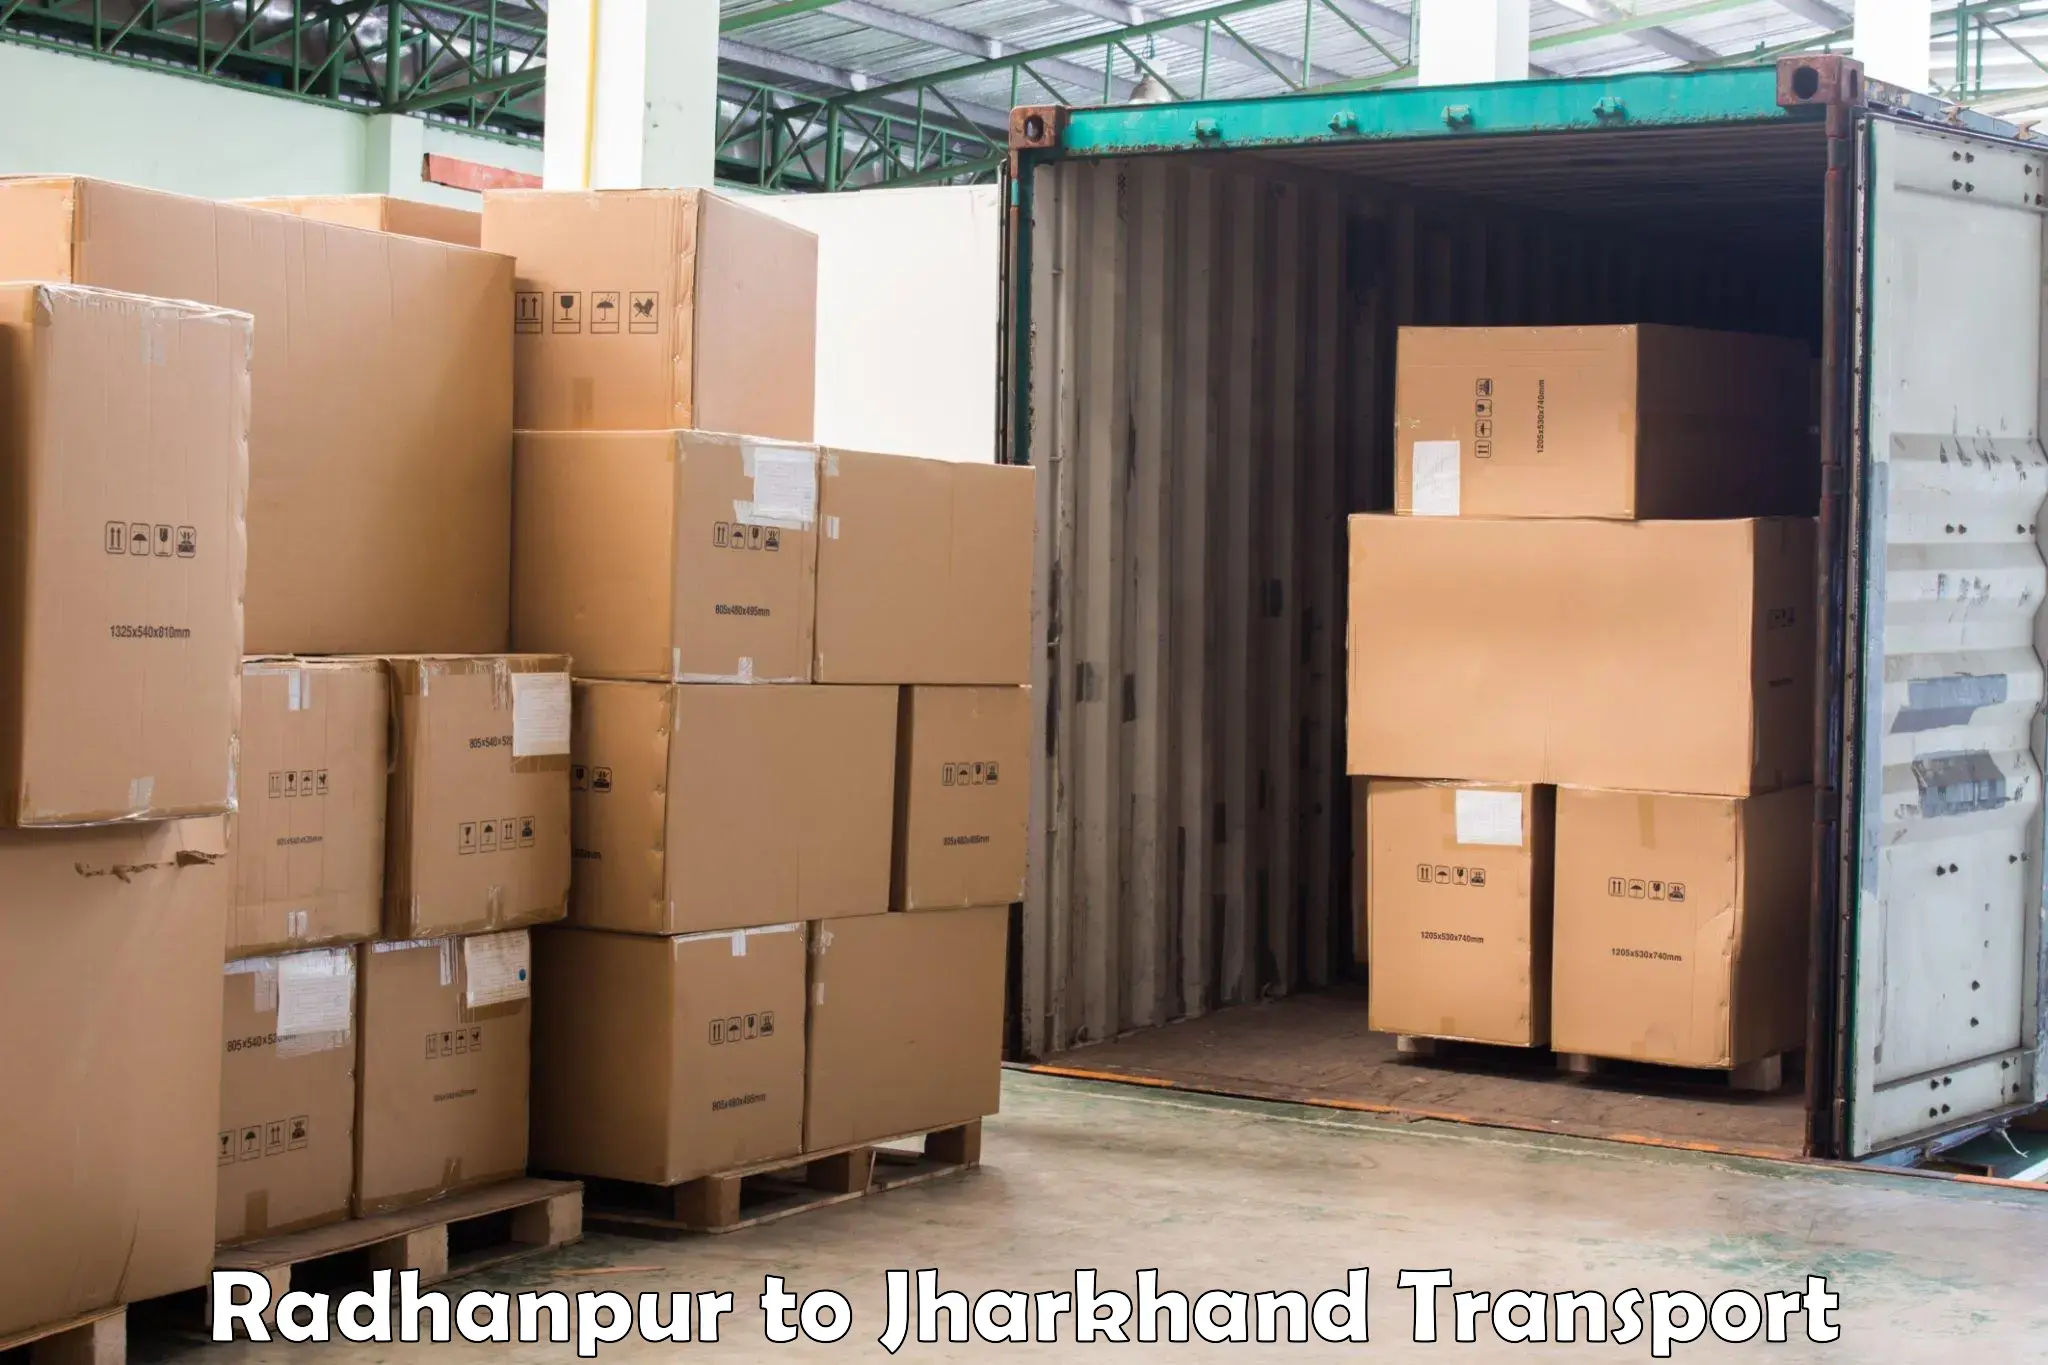 Online transport booking Radhanpur to Koderma